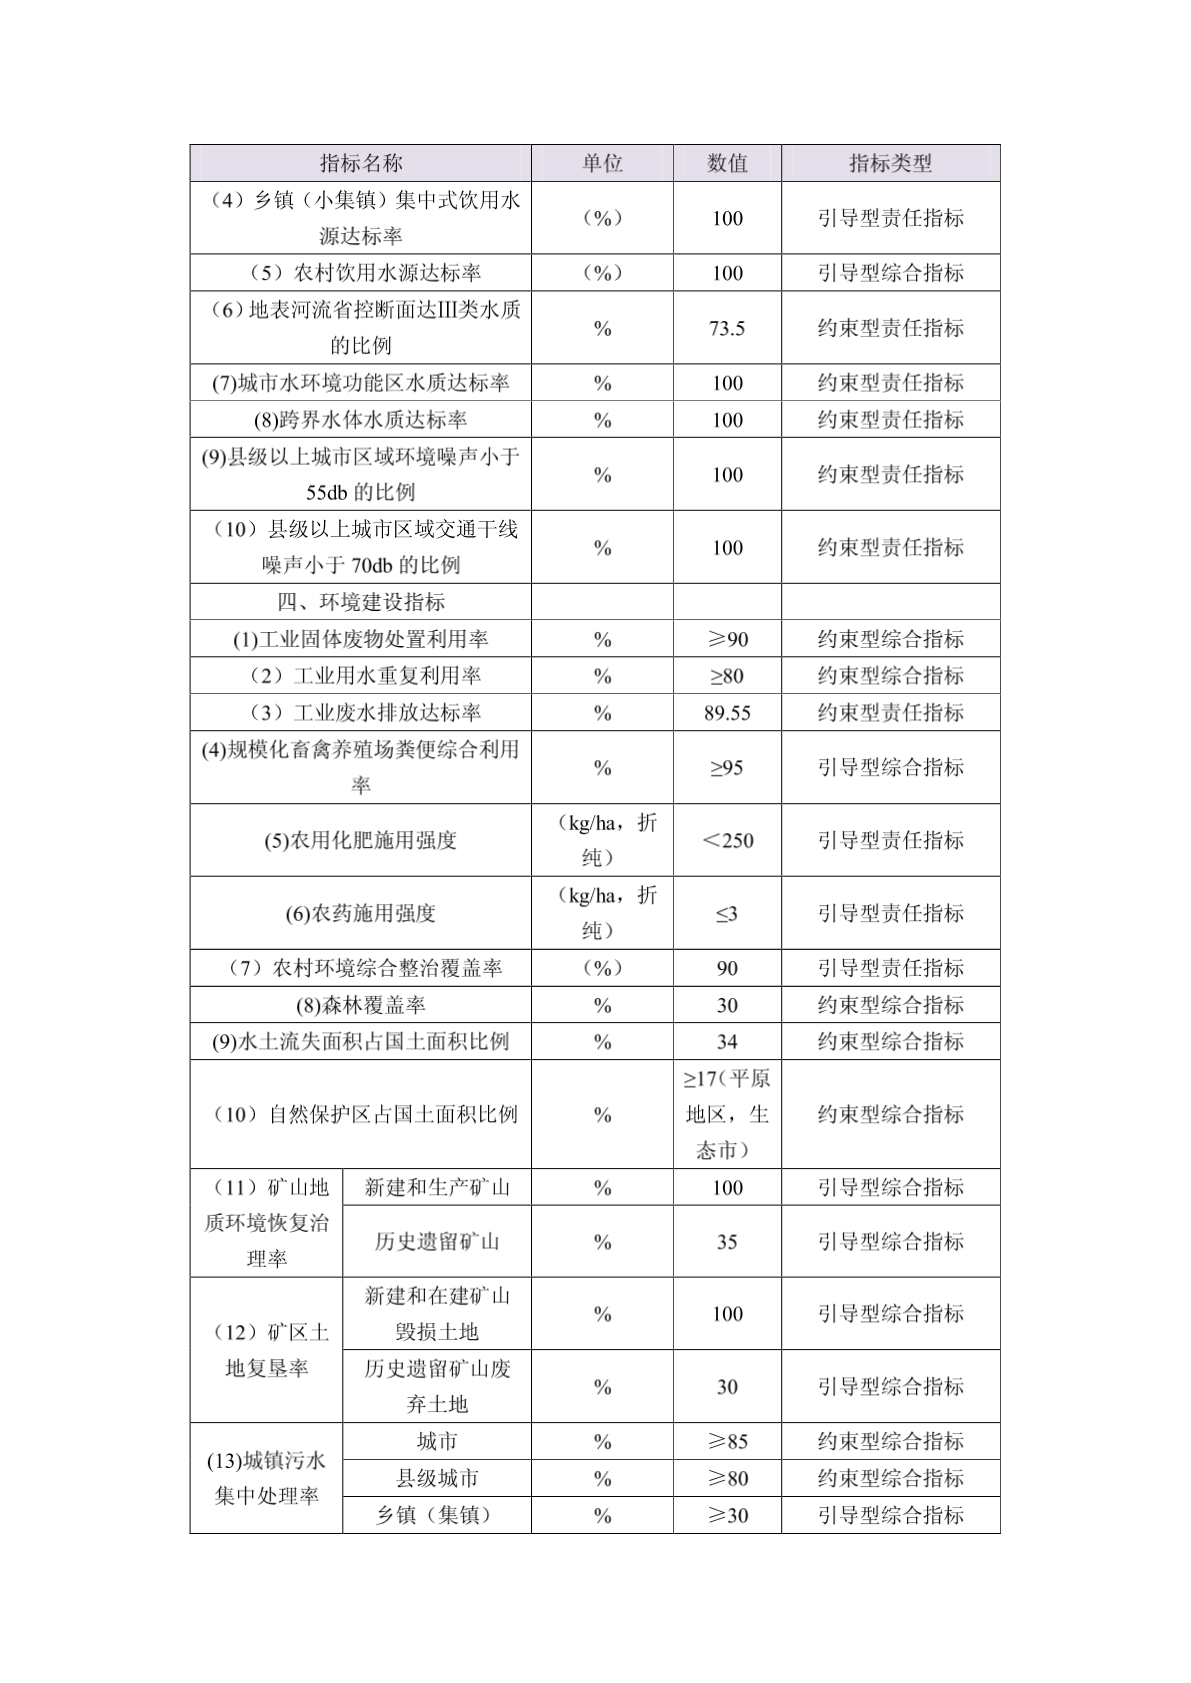 荆州市“十二五”环境保护规划指标体系已确立 - 荆州市环境保护网-图二